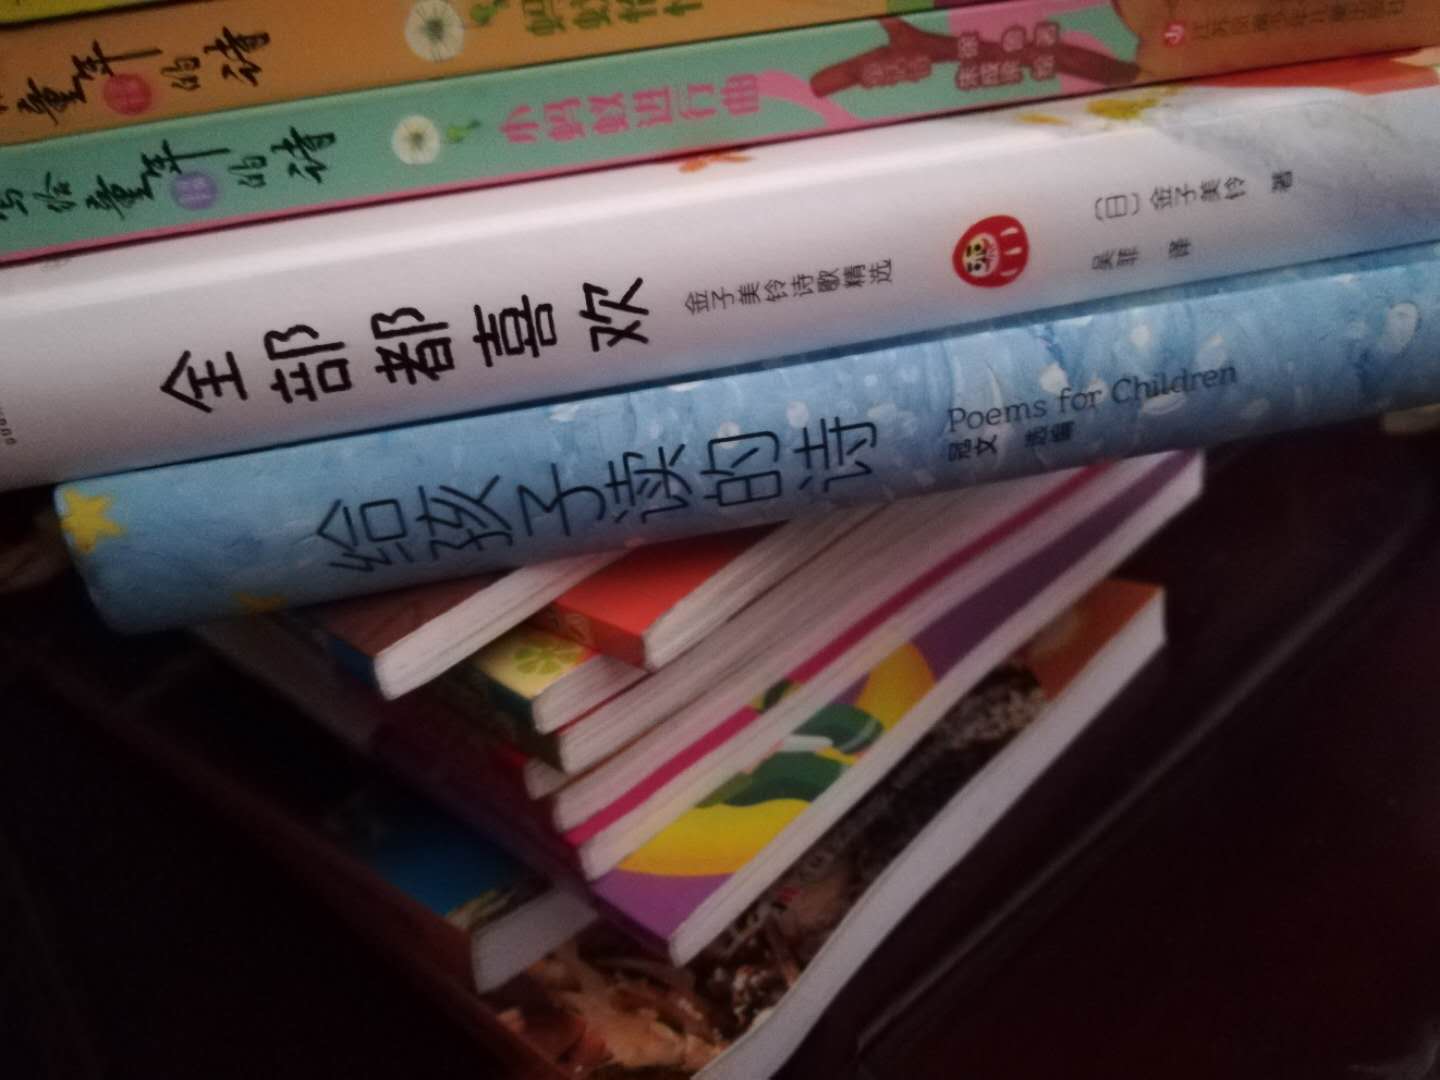 为了找一些儿童的诗歌读物，我翻找了一大堆一大堆的书籍，这一本适合中国小朋友儿童诗歌启蒙读物，太合适不过了? ? ?